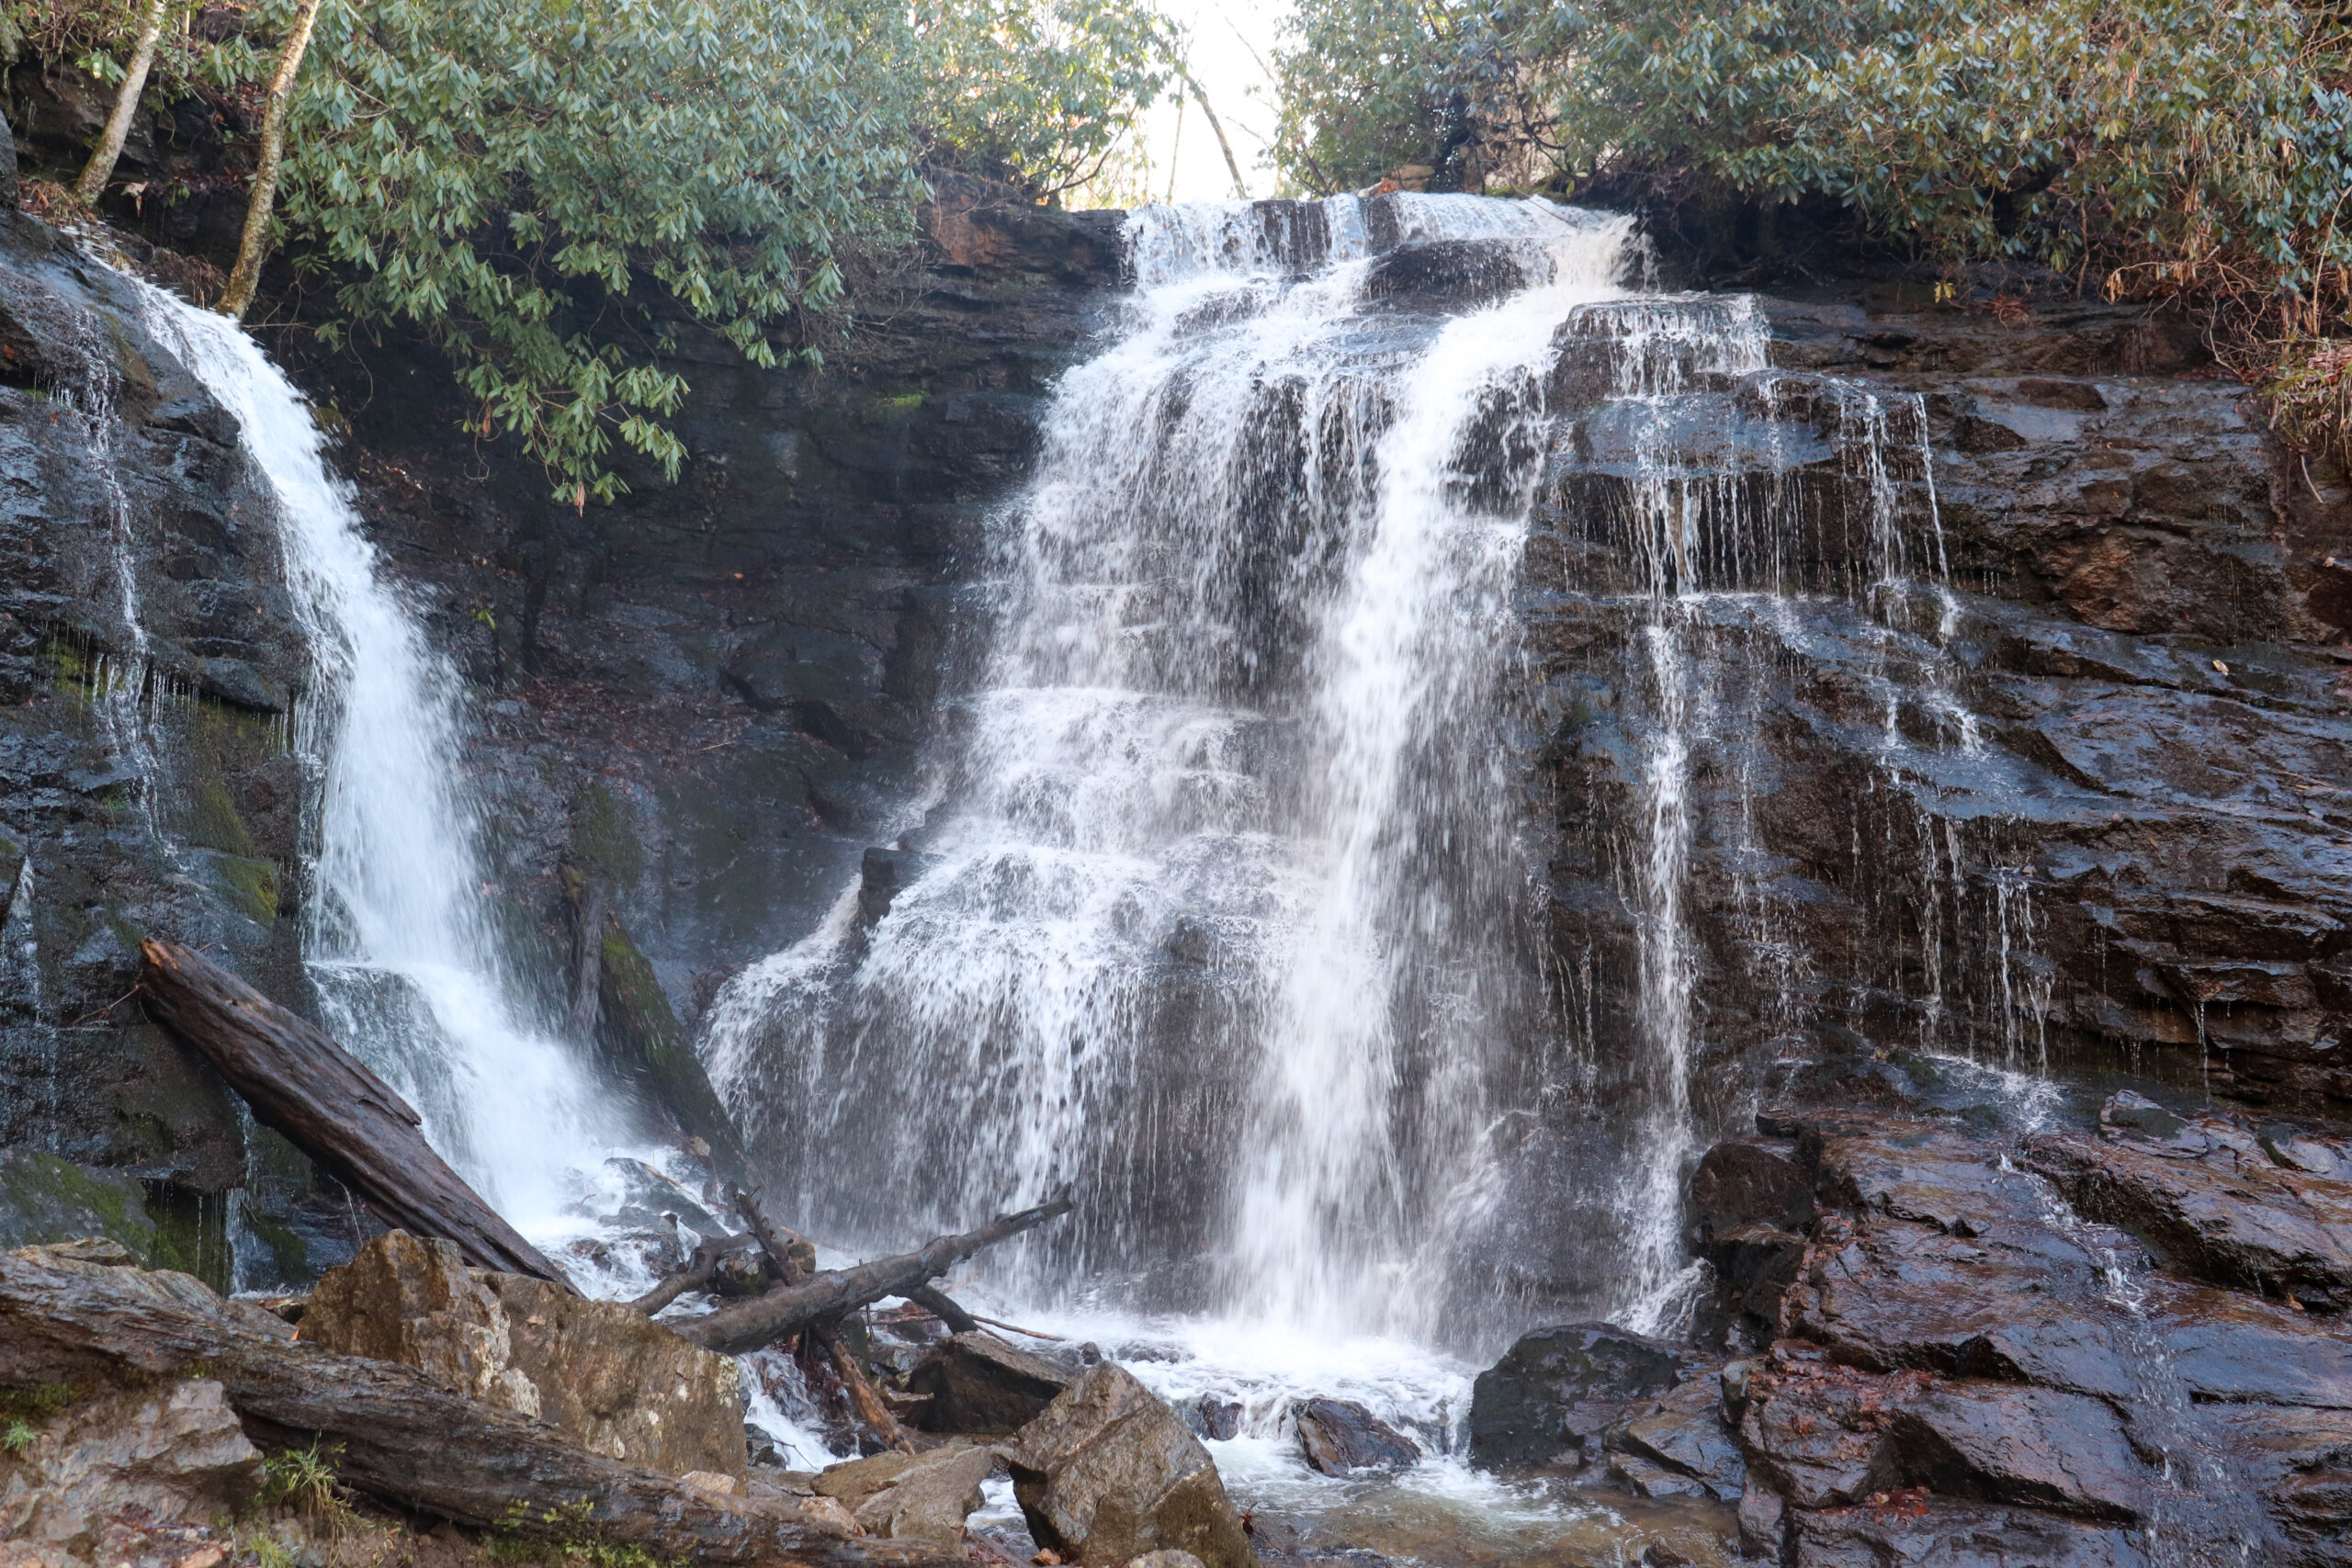 Visiting Soco Falls and Mingo Falls in North Carolina